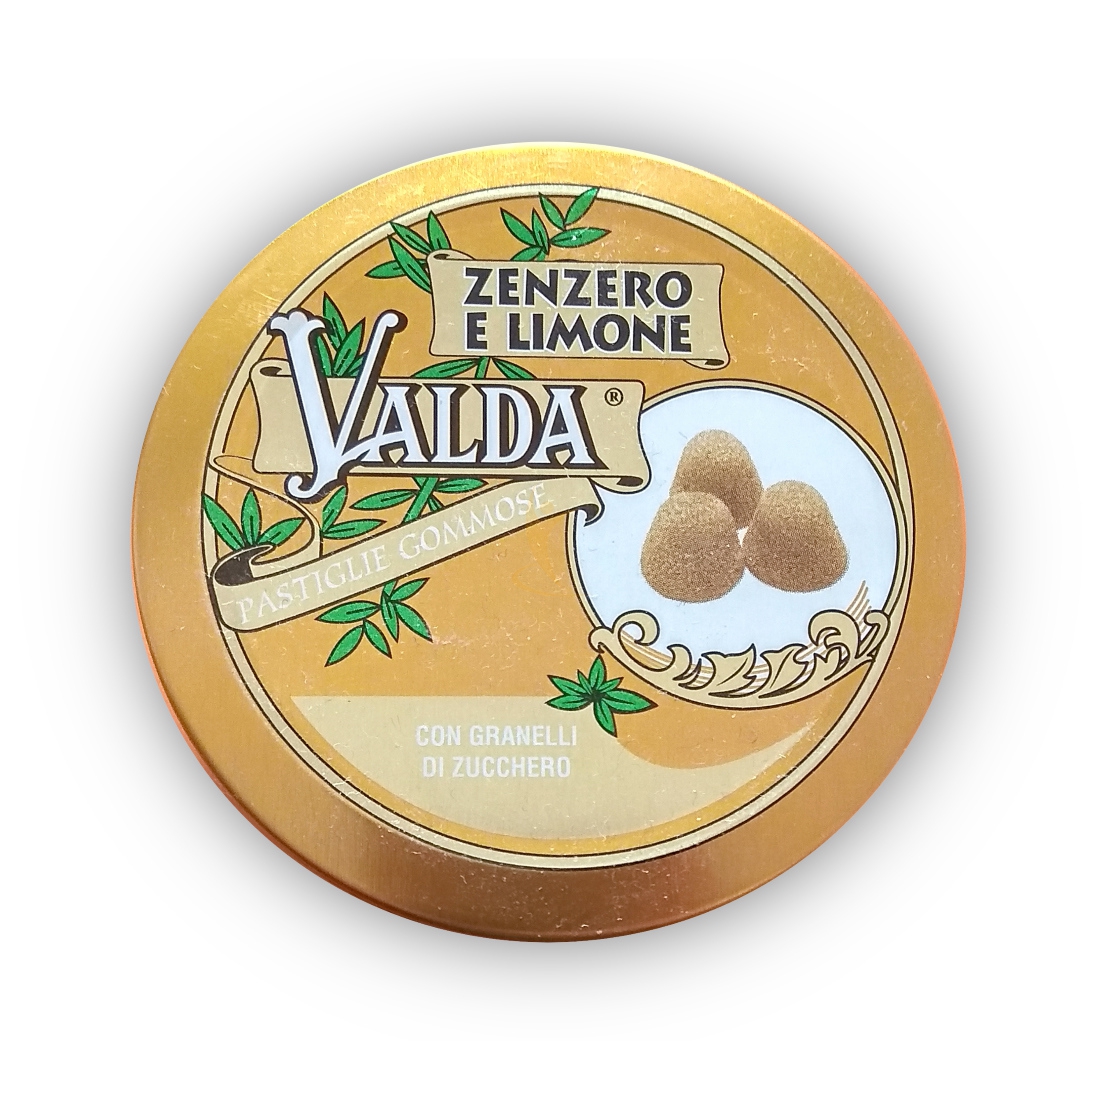 Valda Linea Classica Pastiglie Zenzero e Limone con Zucchero 50g in Metallo